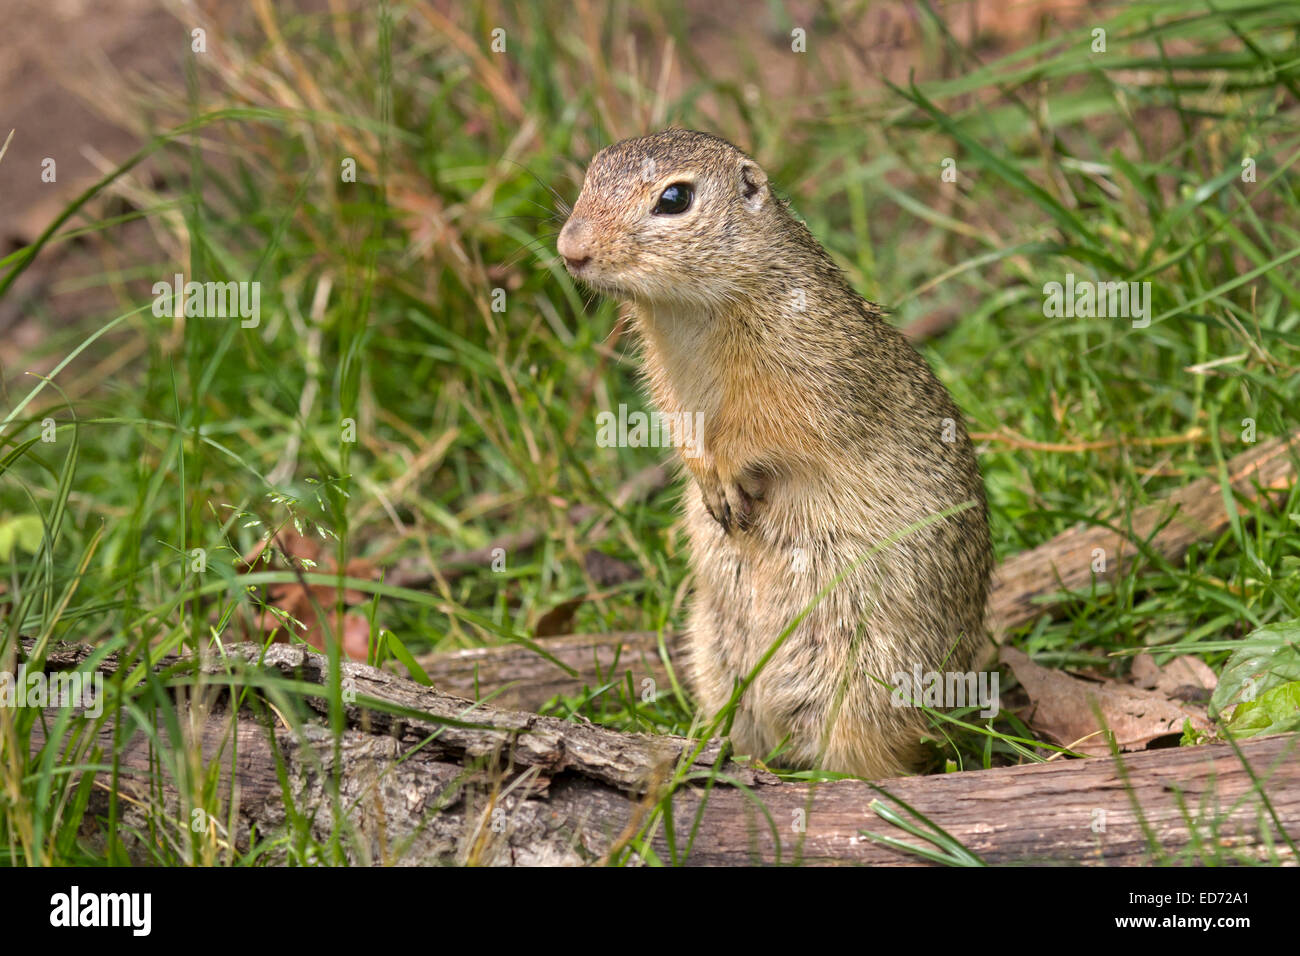 European Ground Squirrel / Spermophilus citellus Stock Photo